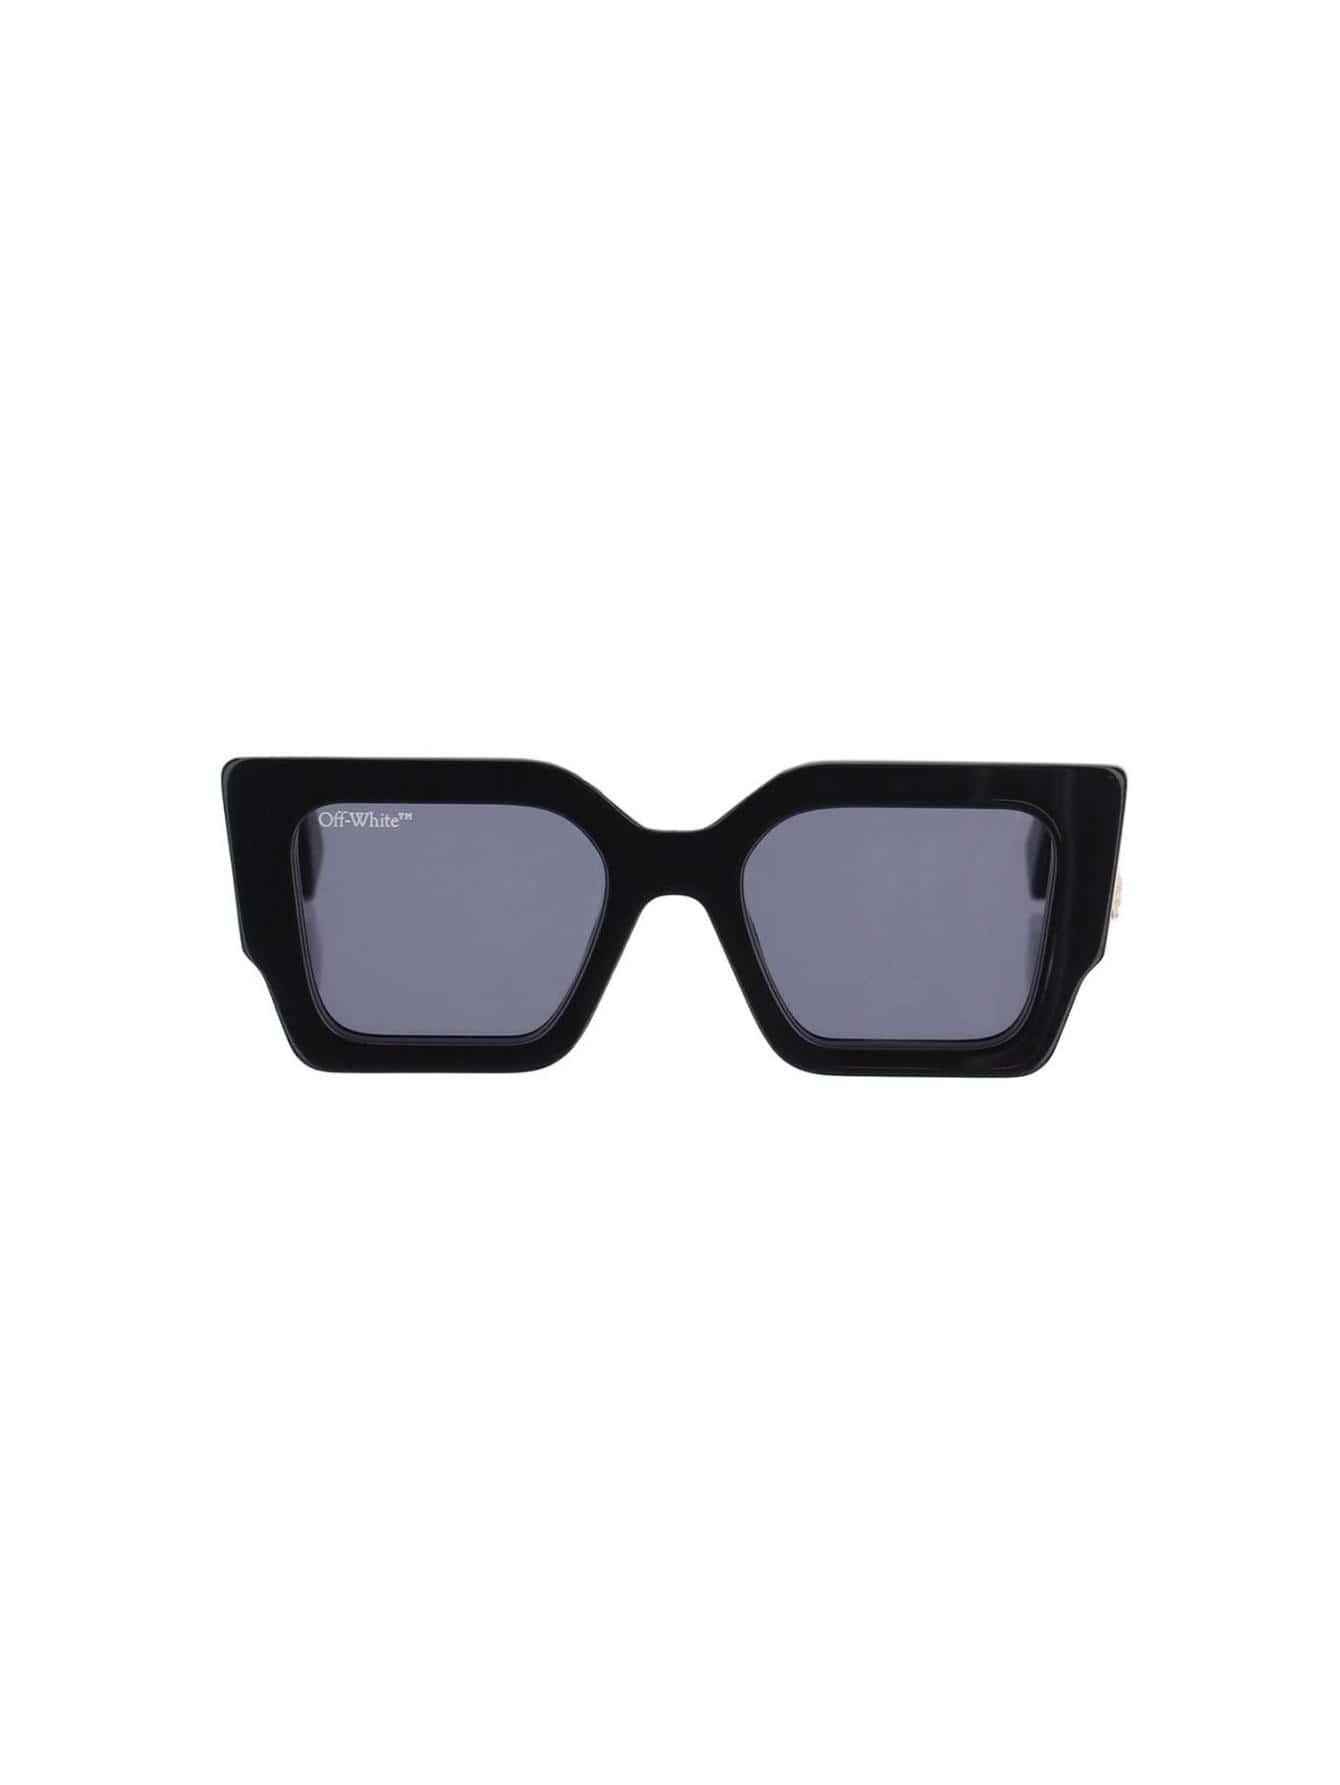 черные солнцезащитные очки на клипсе off white цвет black dark grey Женские солнцезащитные очки Off-White ЧЕРНЫЕ OERI003C99PLA0011007, черный